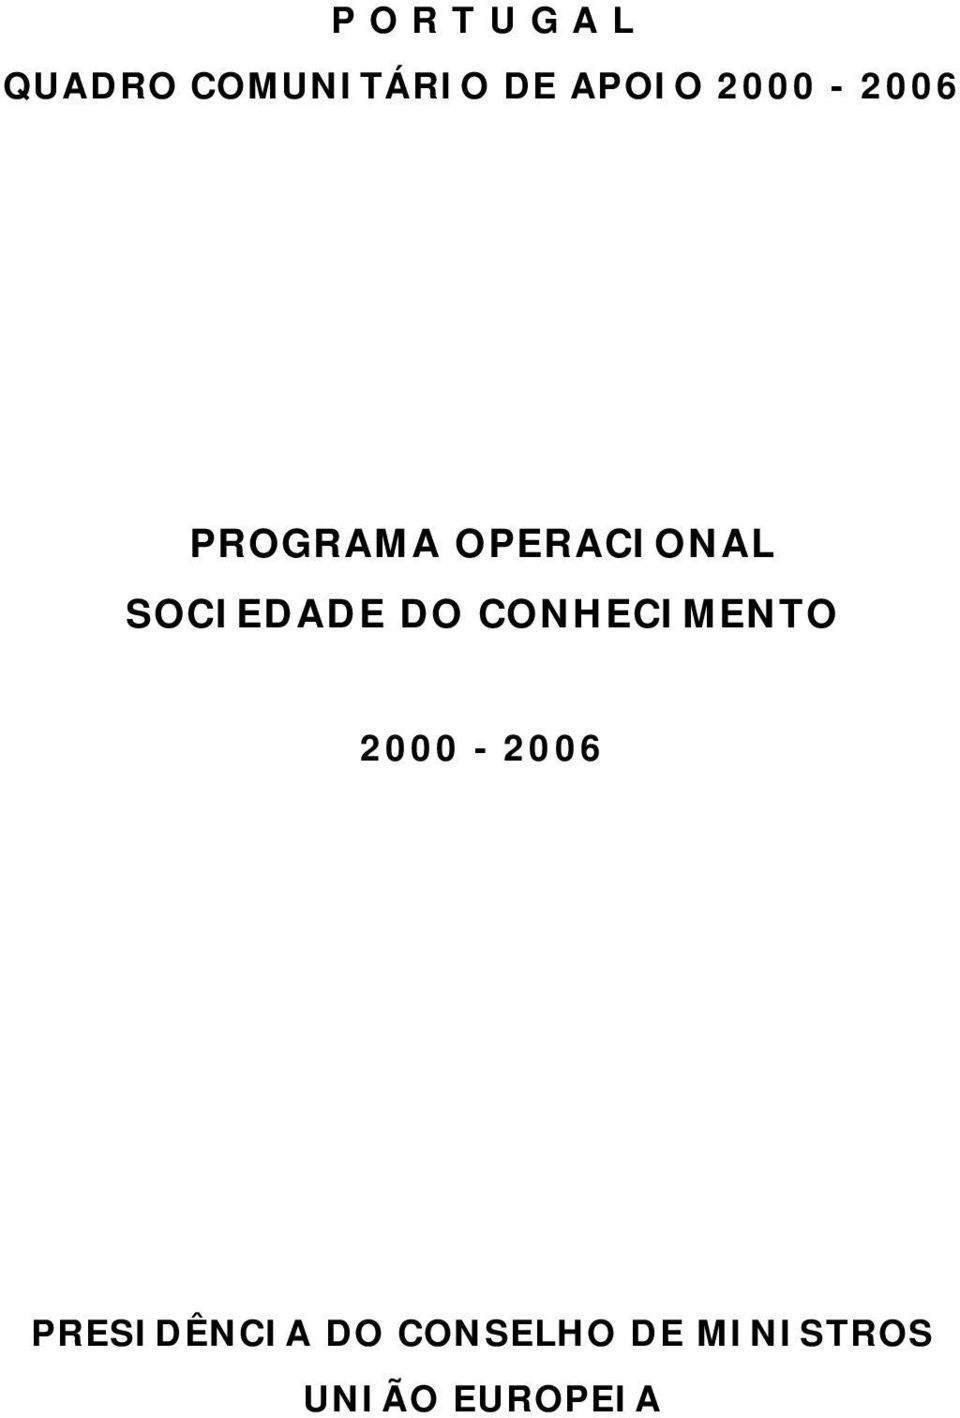 SOCIEDADE DO CONHECIMENTO 2000-2006